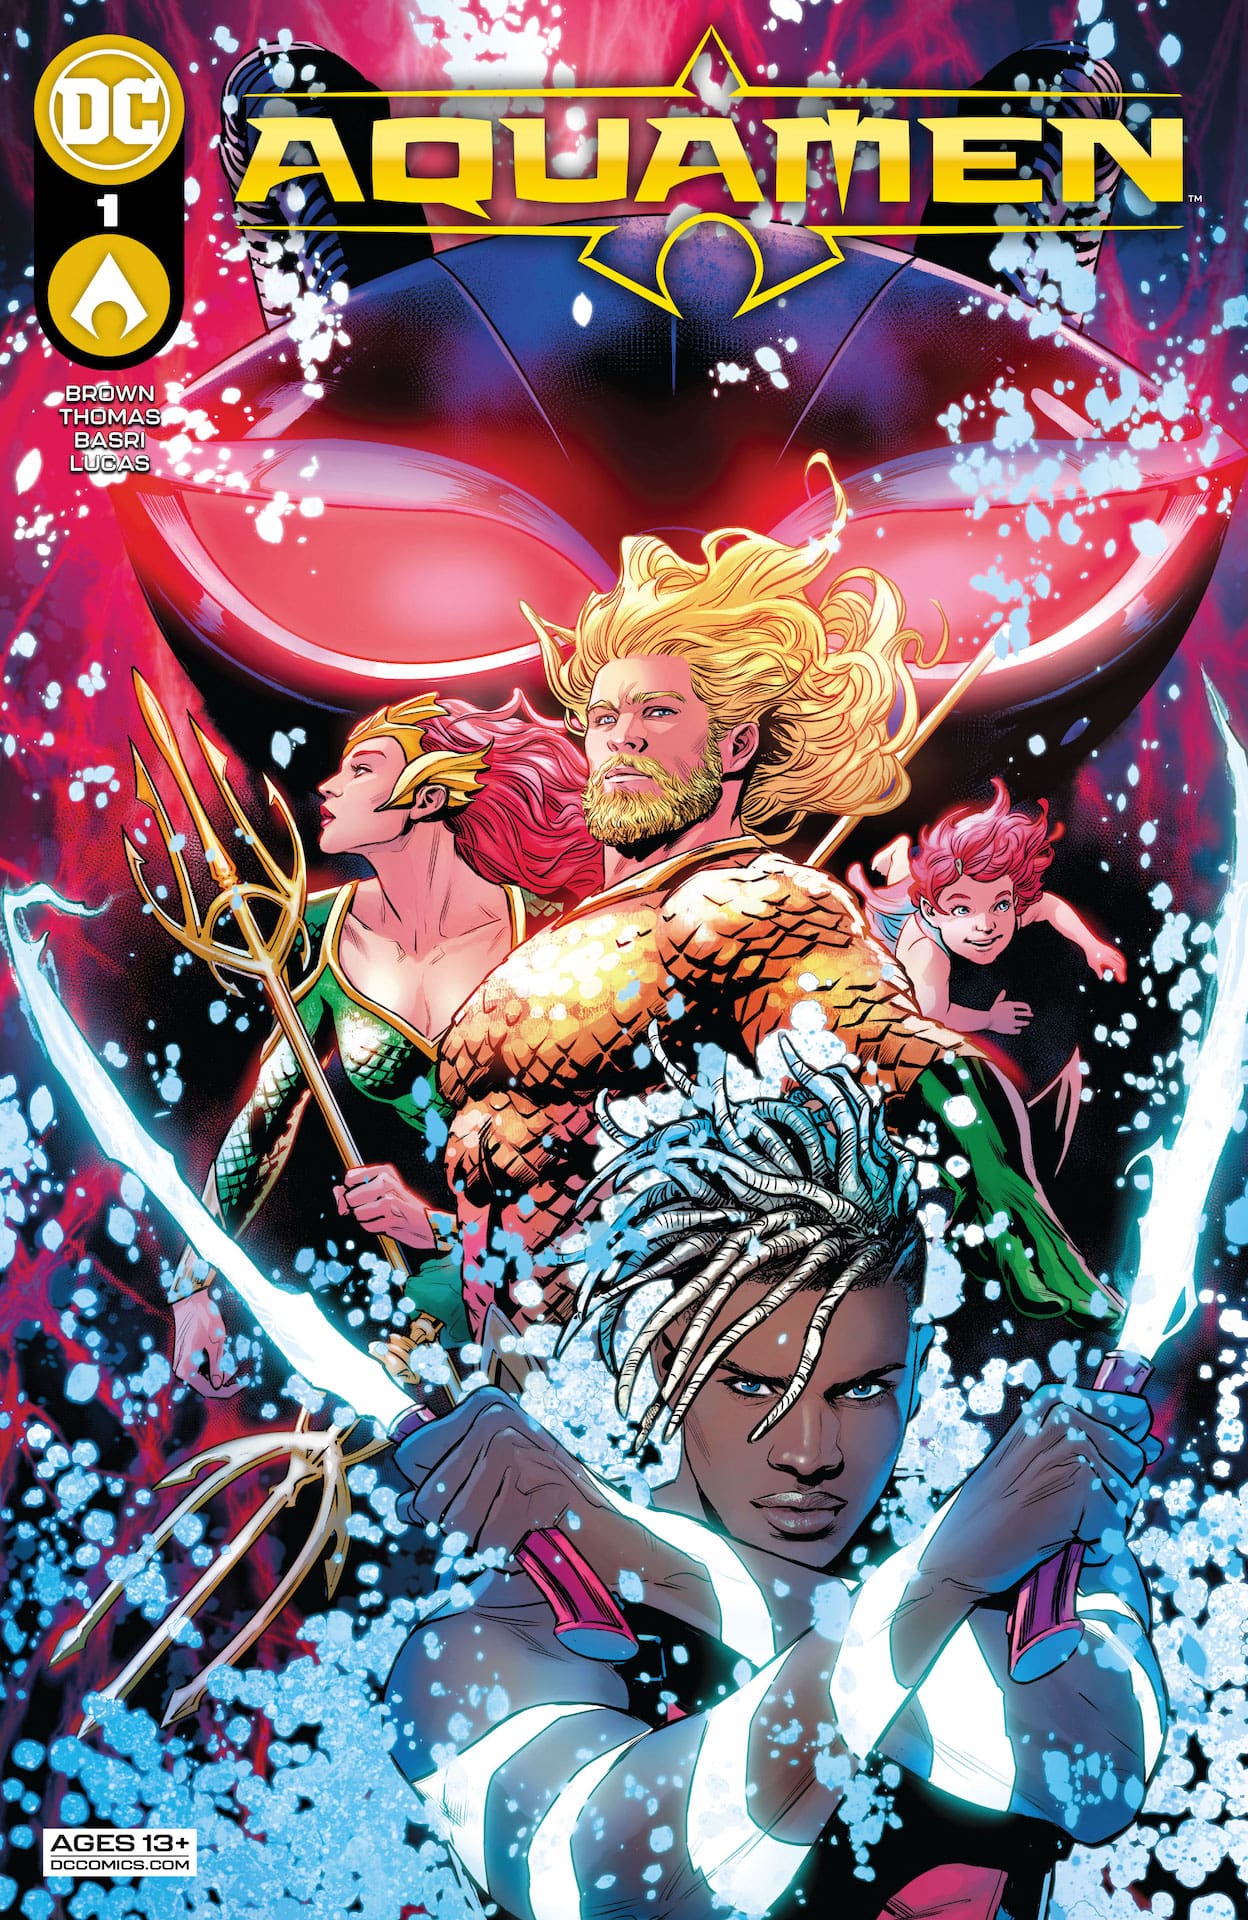 DC Preview: Aquamen #1